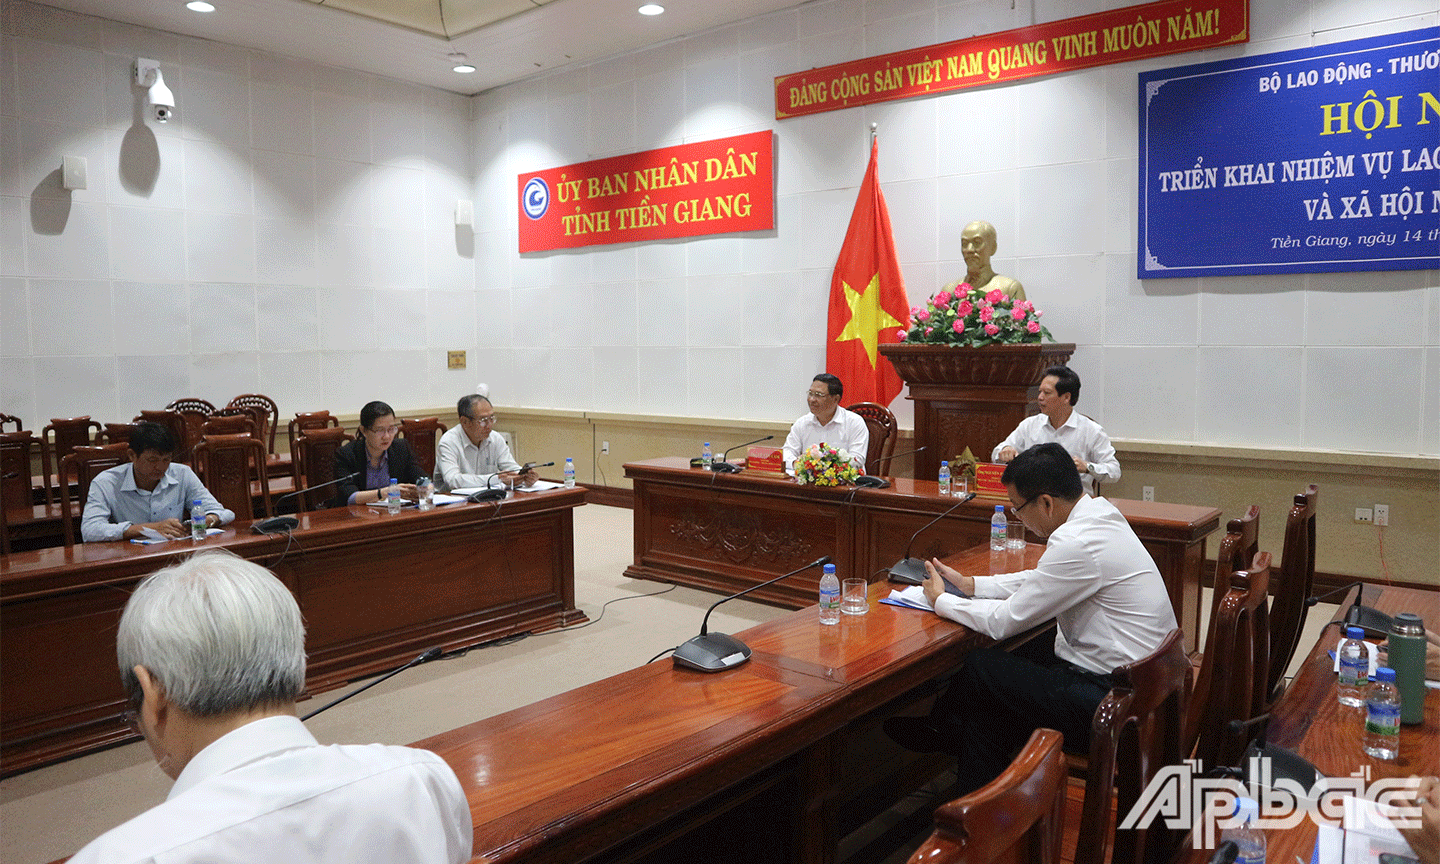 Đại biểu tham dự tại điểm cầu tỉnh Tiền Giang